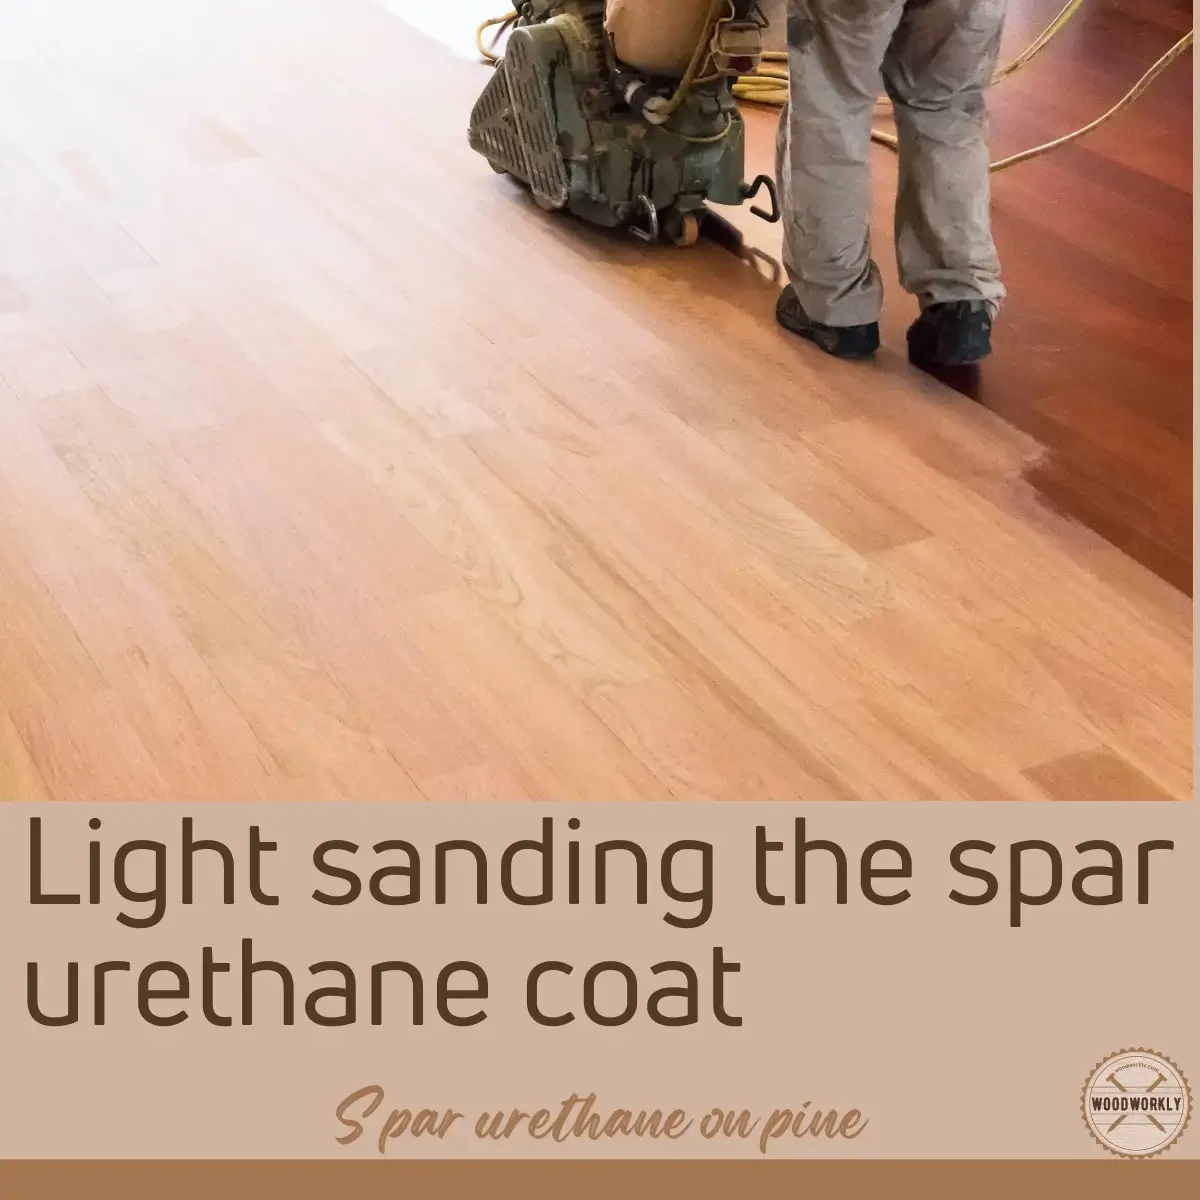 Light sanding the spar urethane coat